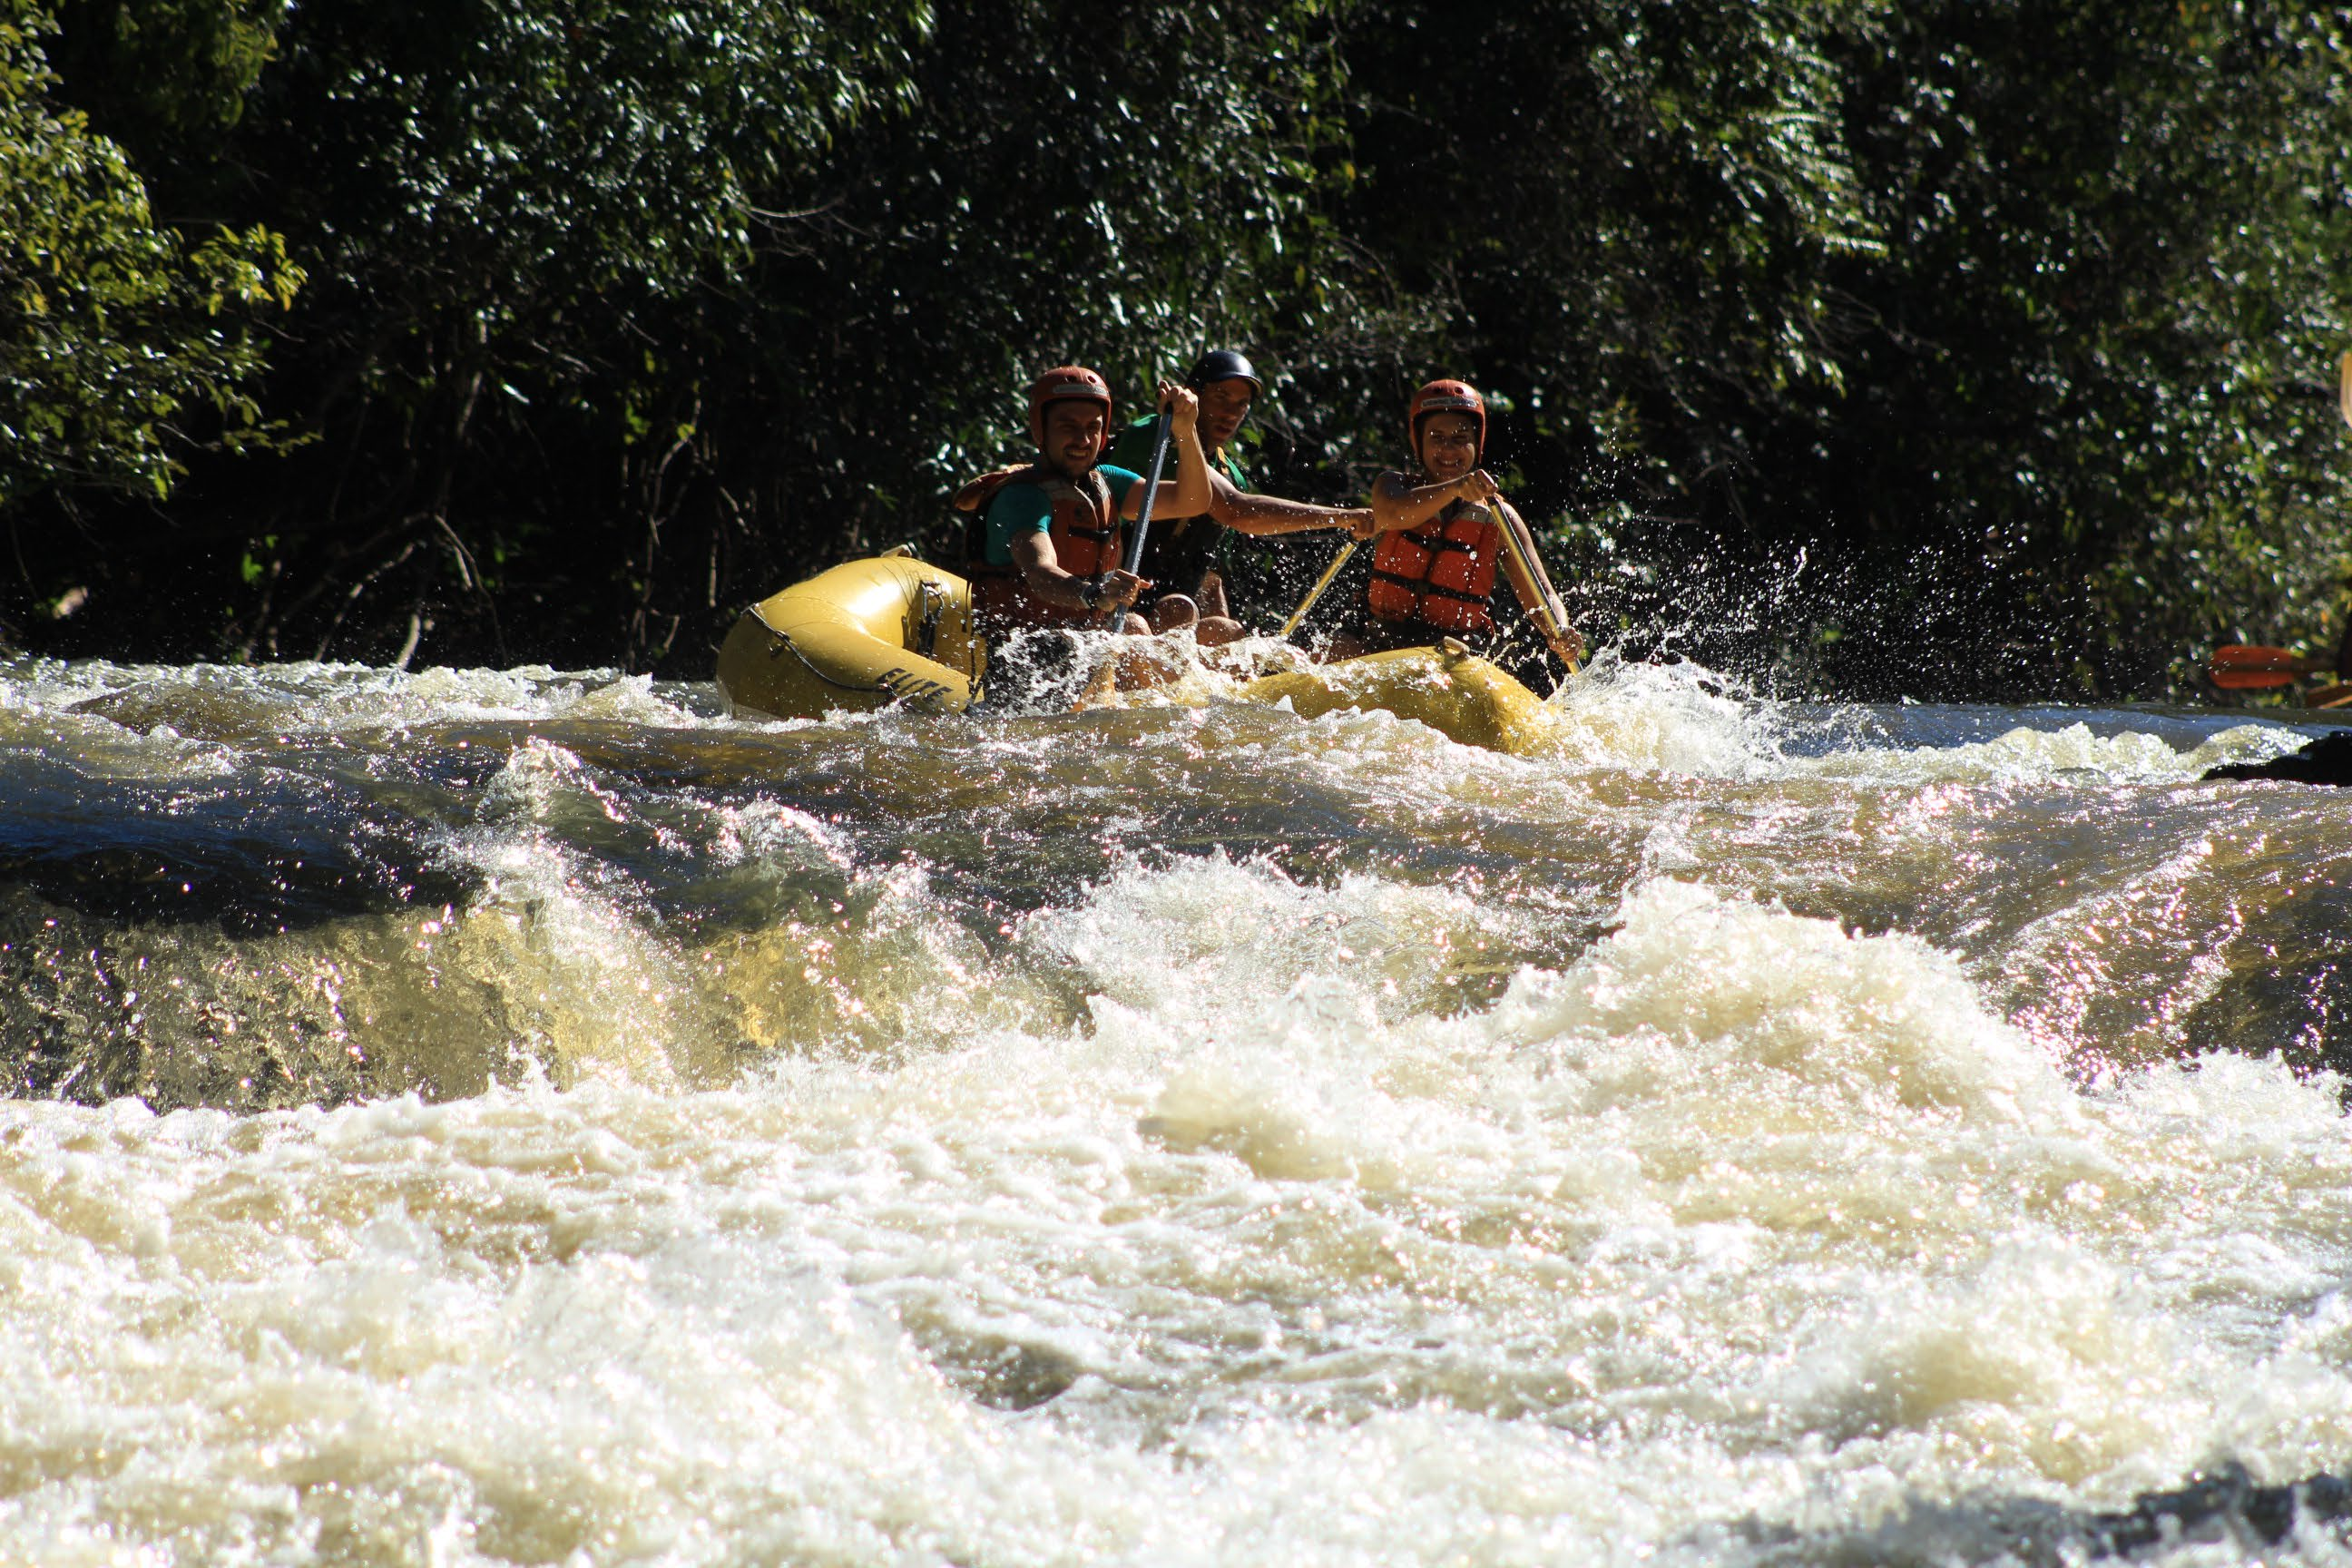 Definição O rafting consiste na descida de rios em botes infláveis. Os participantes remam conduzidos por um condutor, responsável pela orientação do grupo durante o percurso.